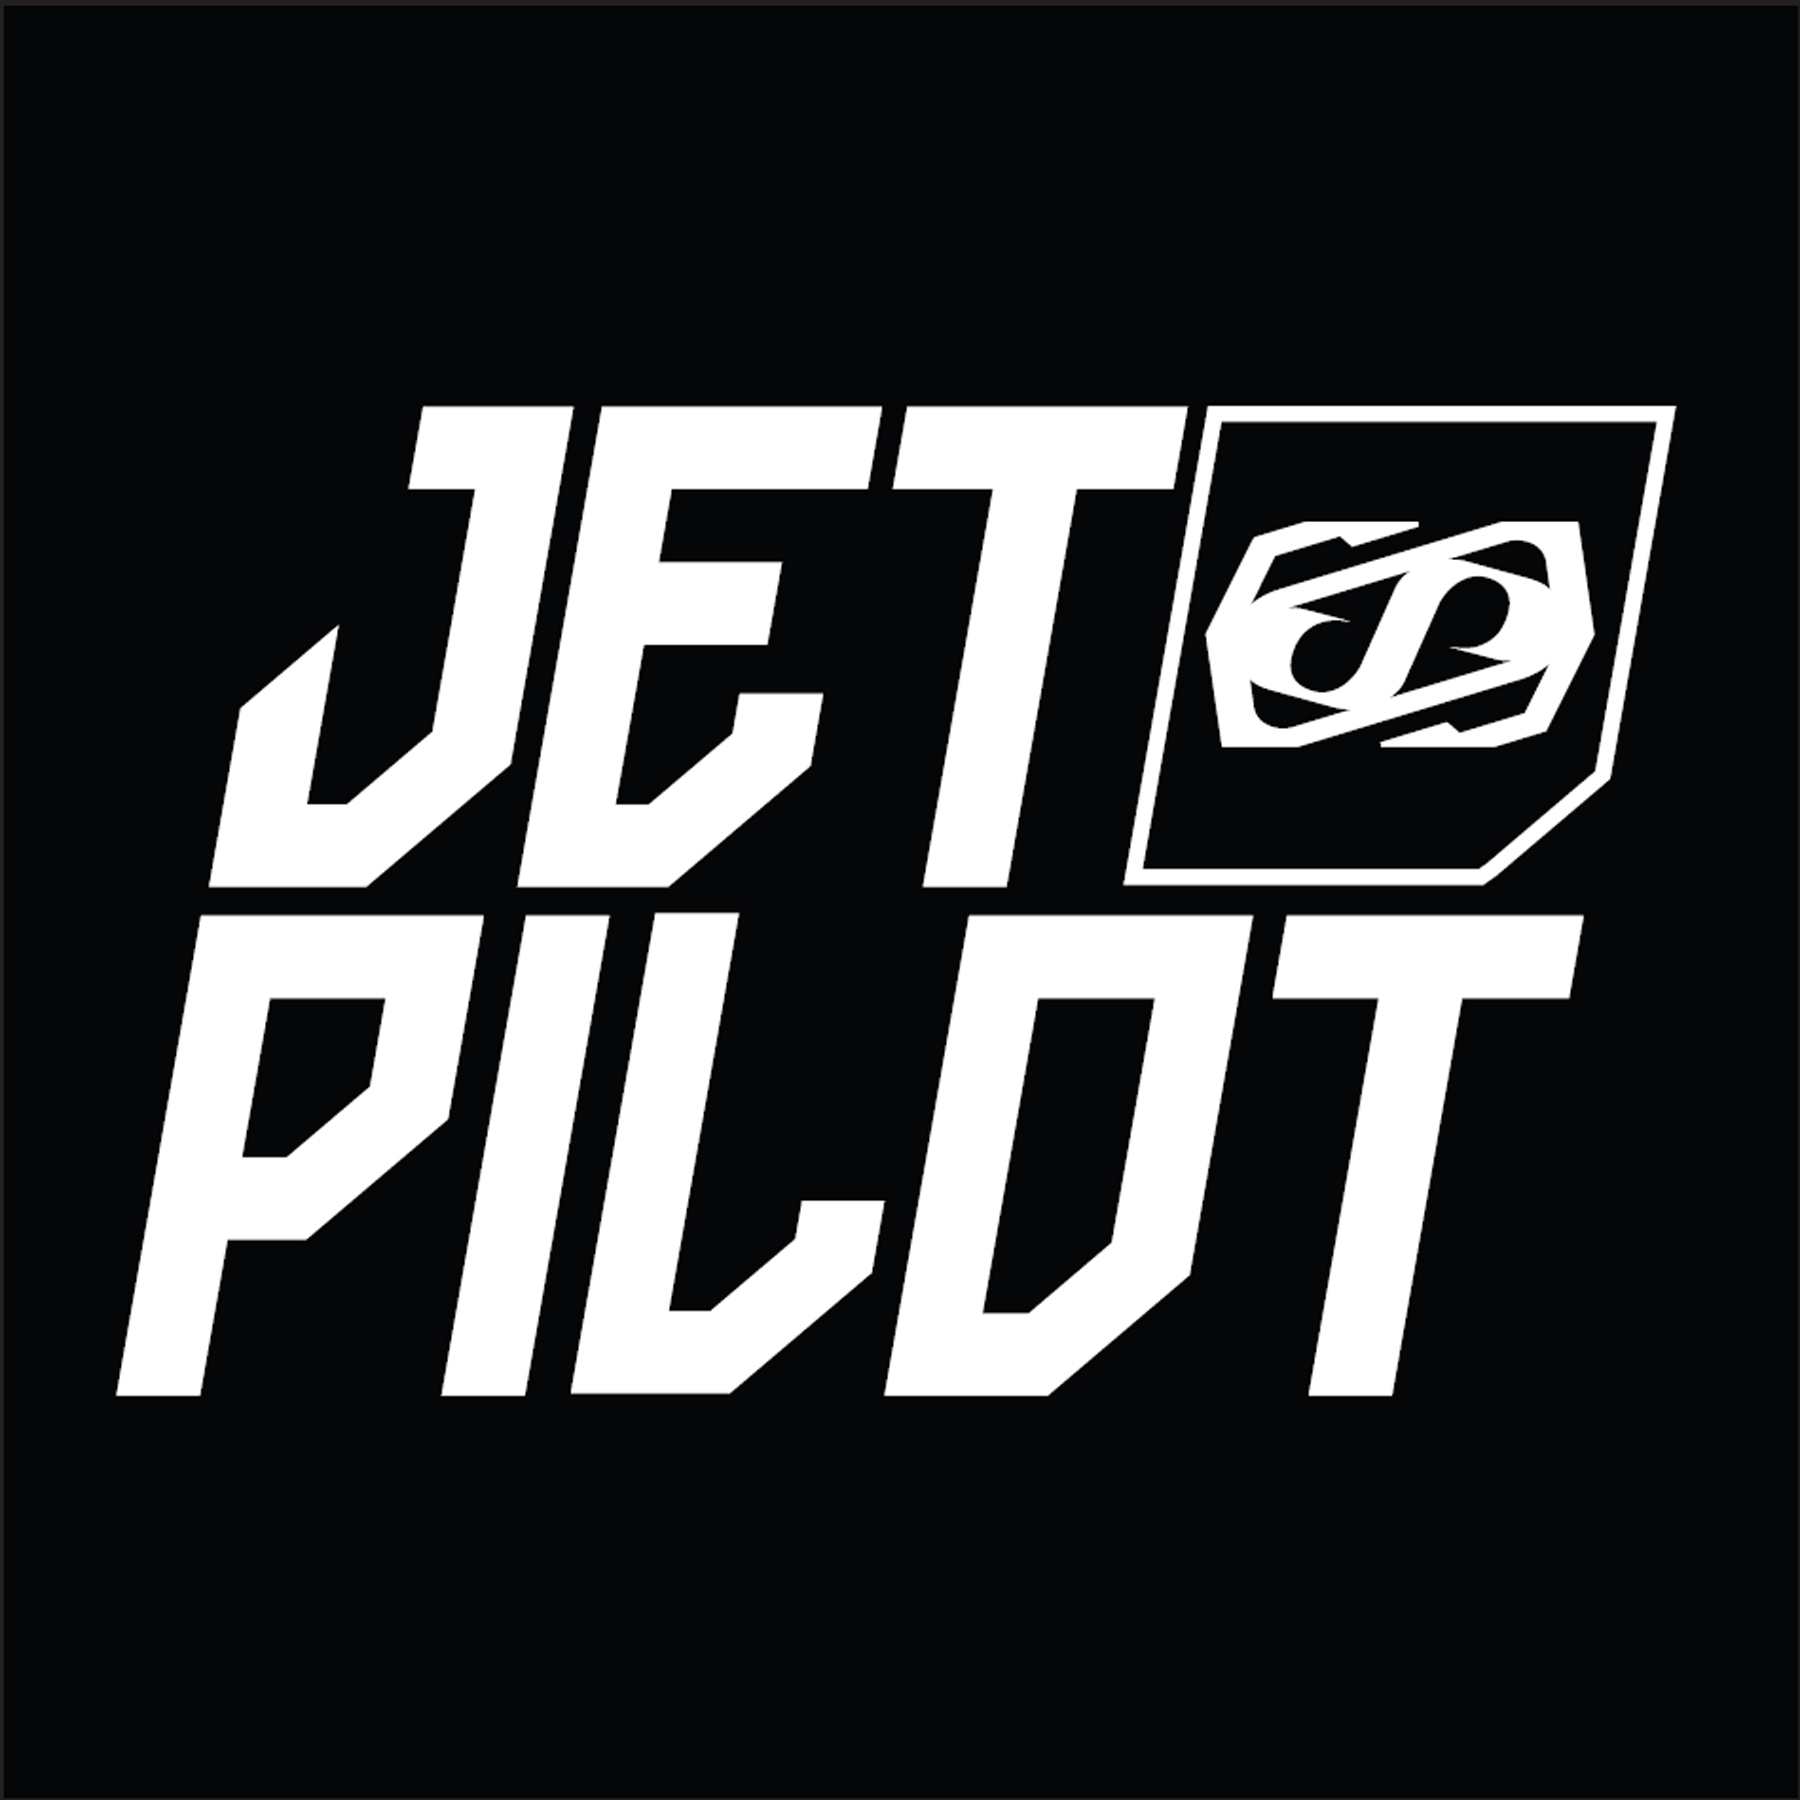 Jetpilot.ma